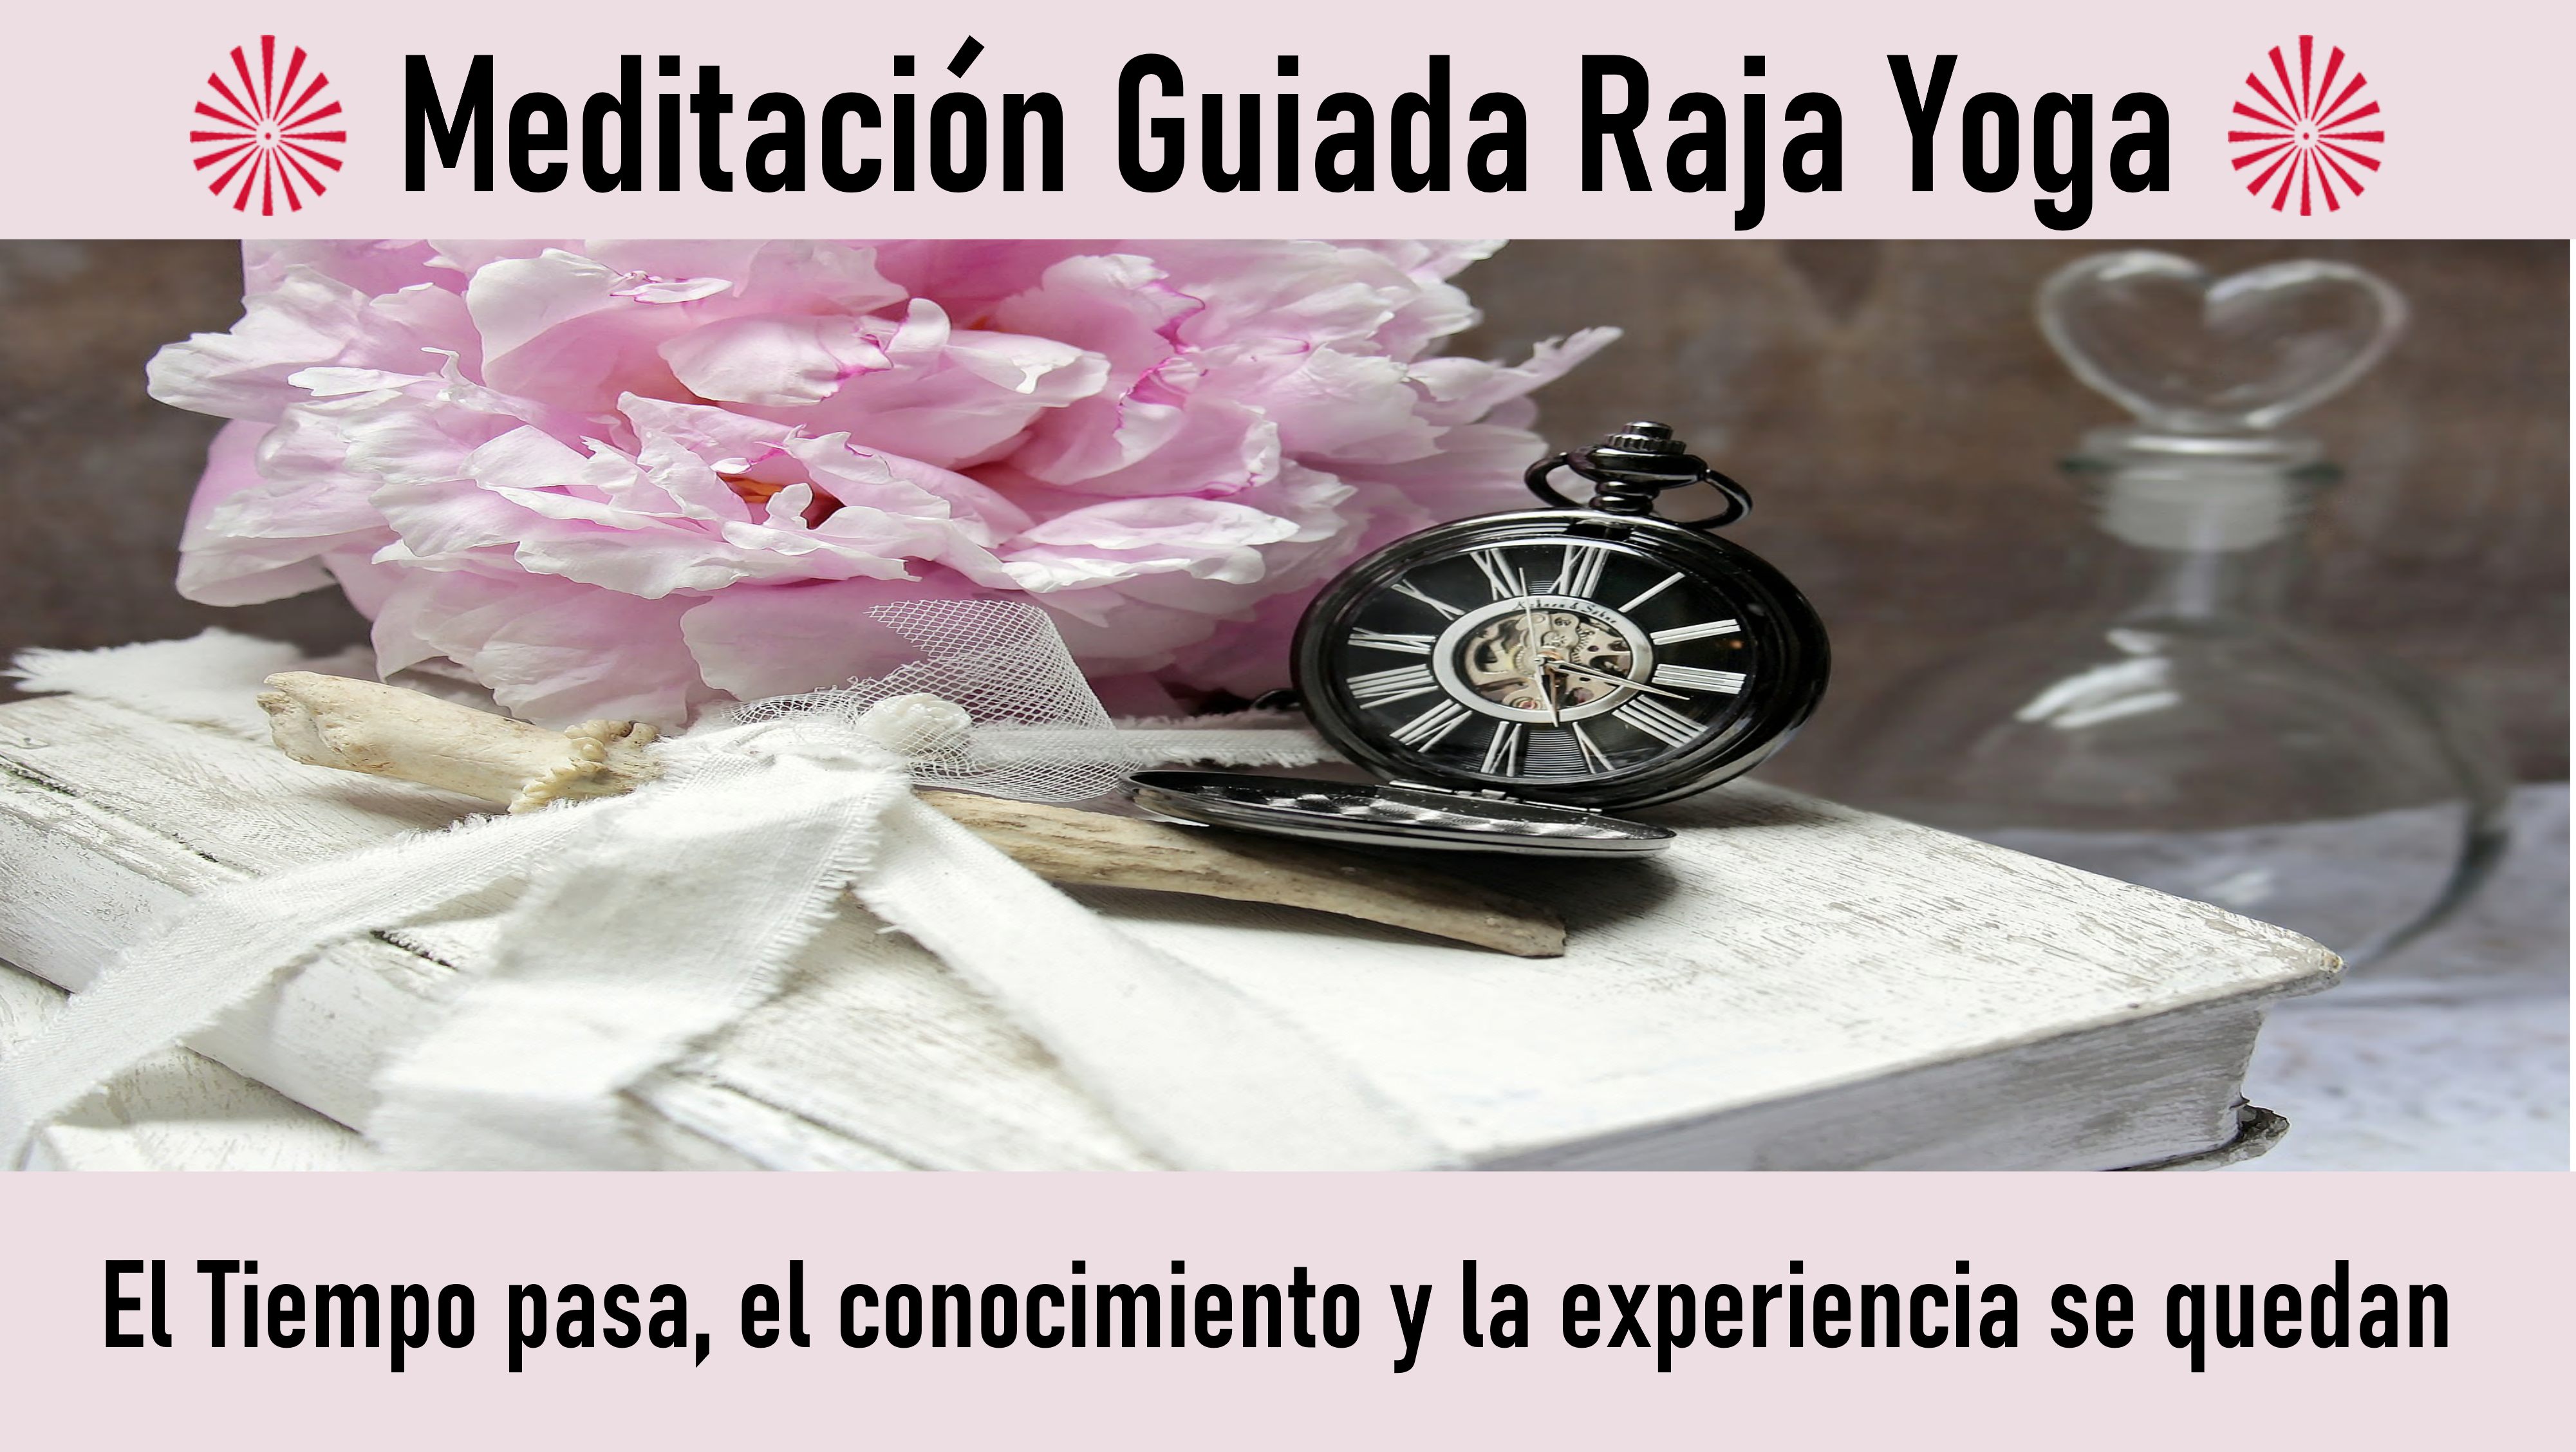 Meditación Raja Yoga: El Tiempo pasa, el conocimiento y la experiencia se quedan (19 Octubre 2020) On-line desde Madrid